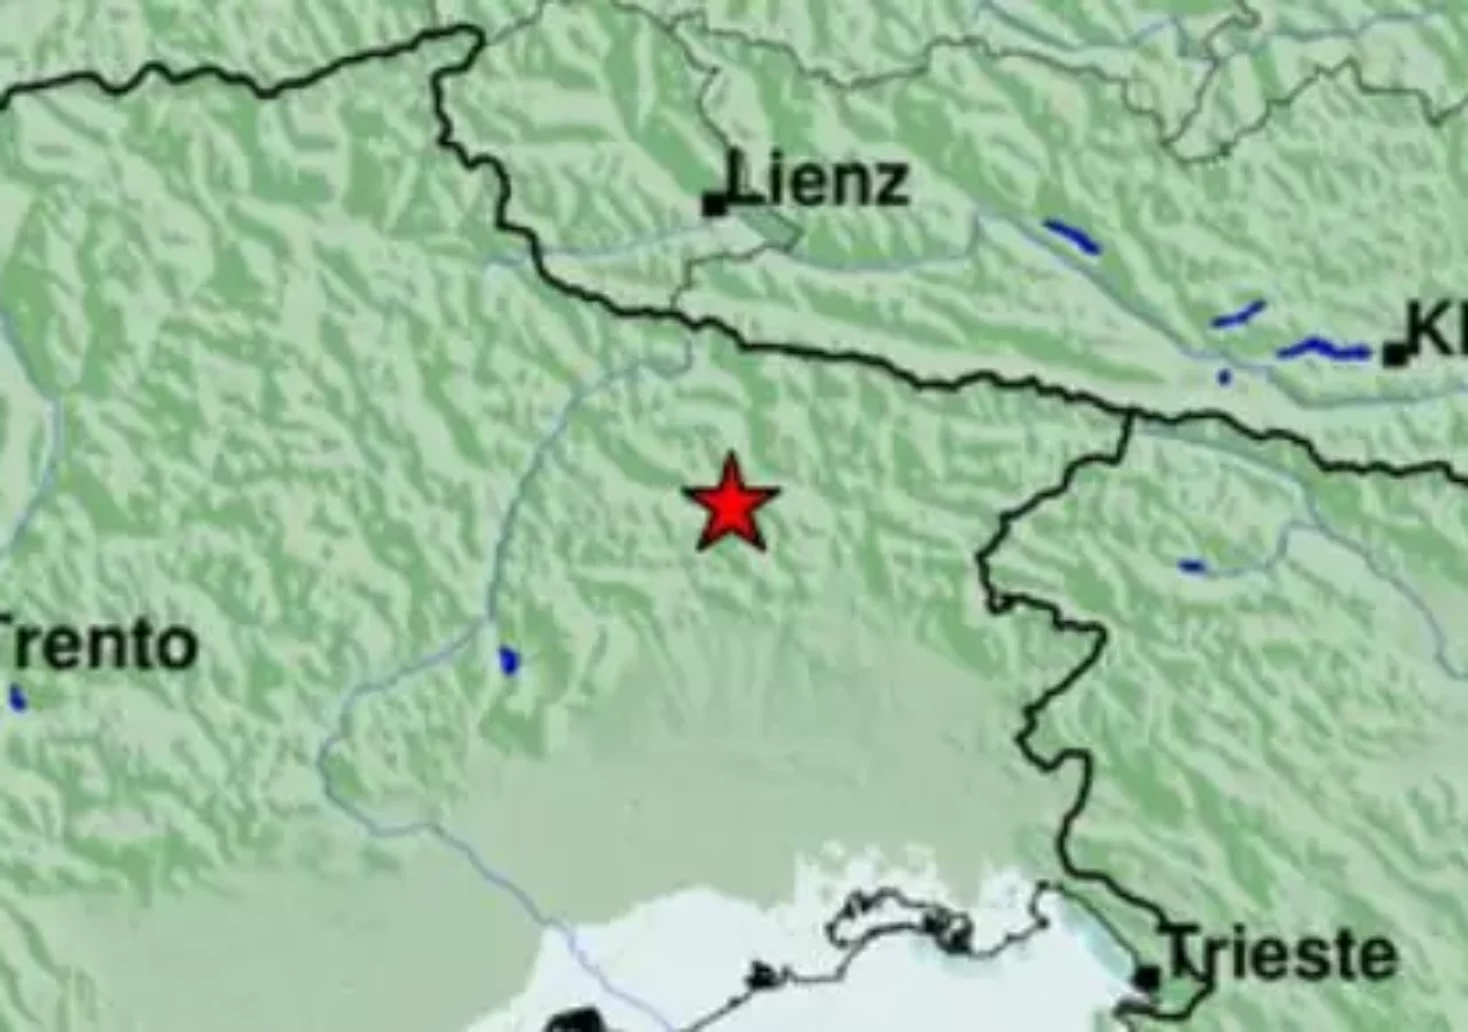 Foto in Beitrag von 5min.at: Zu sehen ist das Erdbeben in der Grenzregion zwischen Italien und der Schweiz heute Abend.